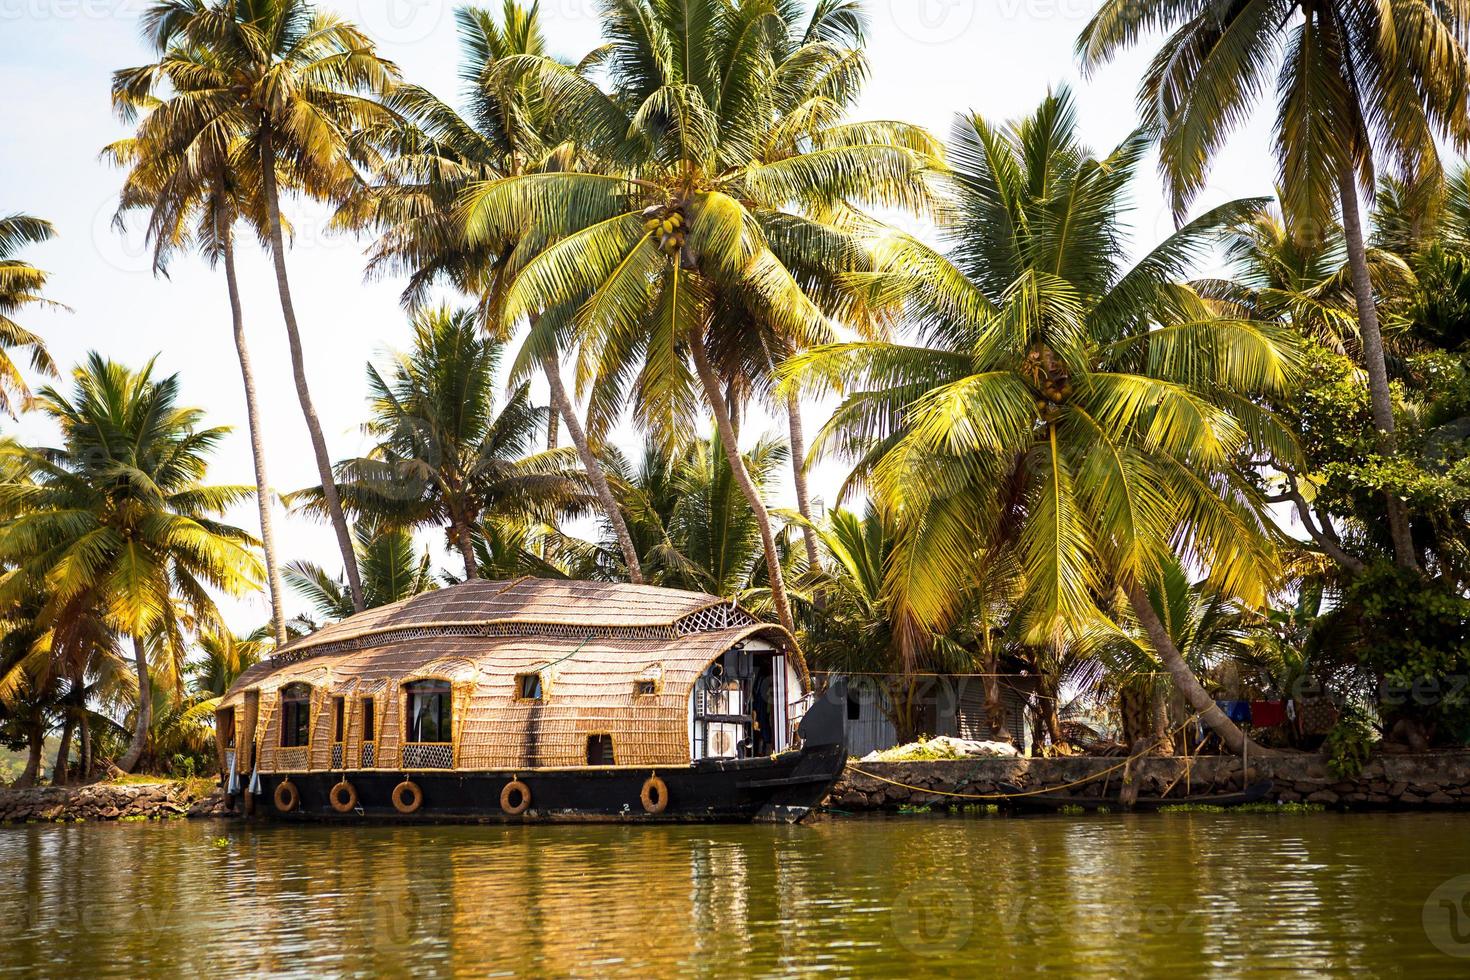 nöjeskryssningsfartyg för husbåt i Indien, Kerala på de tångtäckta flodkanalerna i allapuzha i Indien. båt på sjön i strålande sol och palmer bland tropikerna. syn husbåt foto